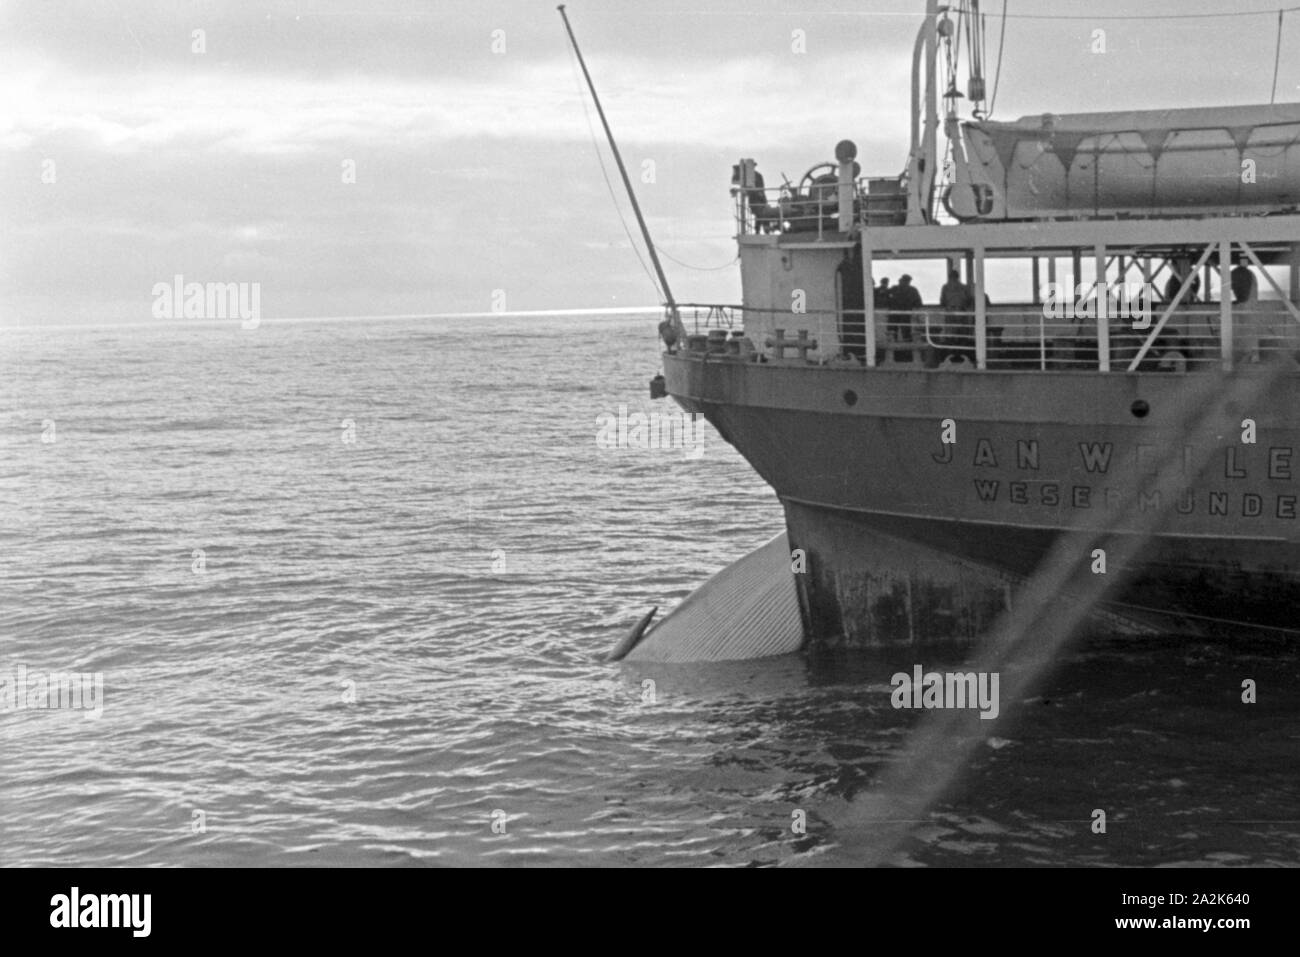 Der Kadaver eines erlegten Wals wird an Bord des Fabrikschiffs 'Jan Wellem' gezogen, 1930er Jahre. Una balena cadavere venga tirato sul ponte della nave officina 'Jan Wellem', 1930s. Foto Stock